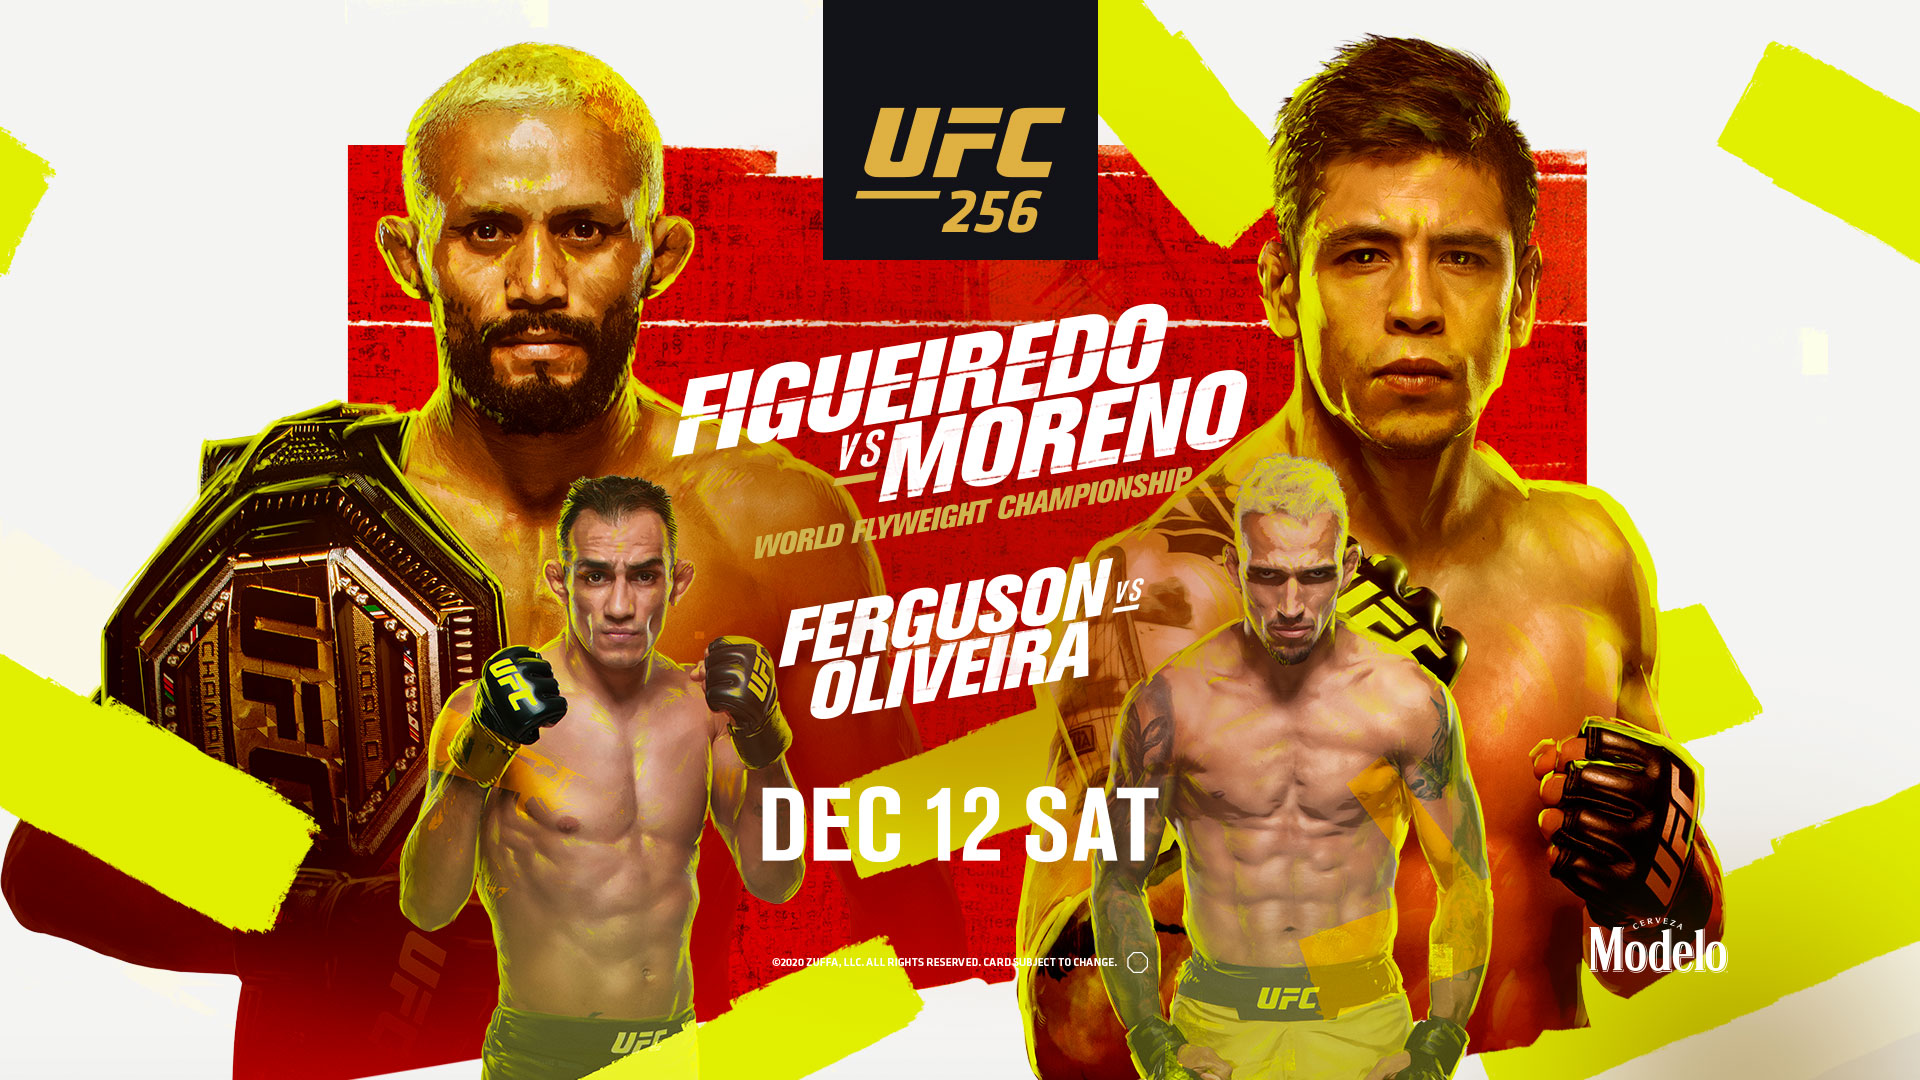 UFC 256 Figueiredo v Moreno